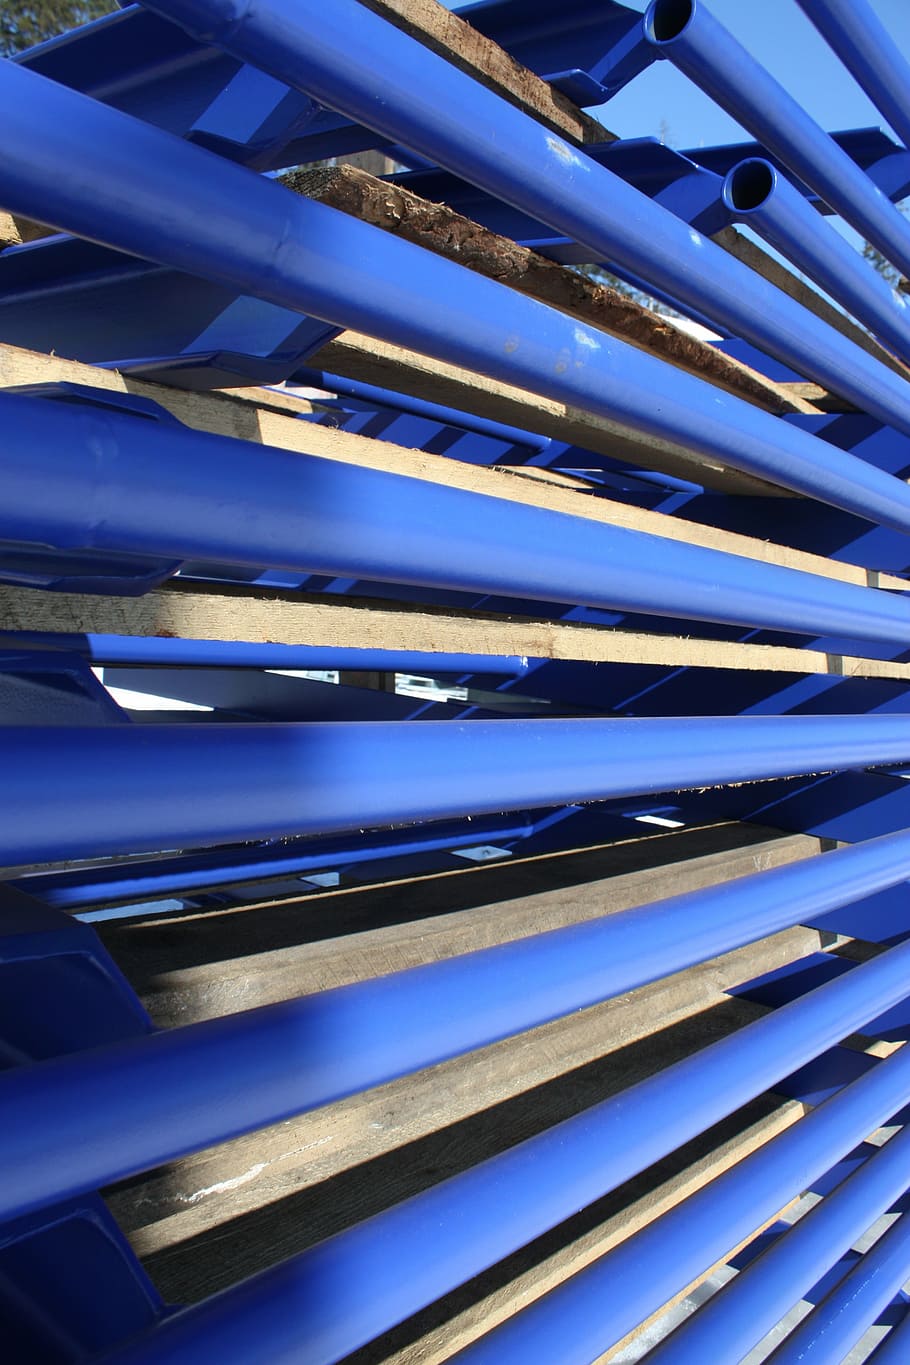 azul, lote de tubería de pvc, tuberías, metal, industrial, tubería, tubo, tecnología, metálico, industria